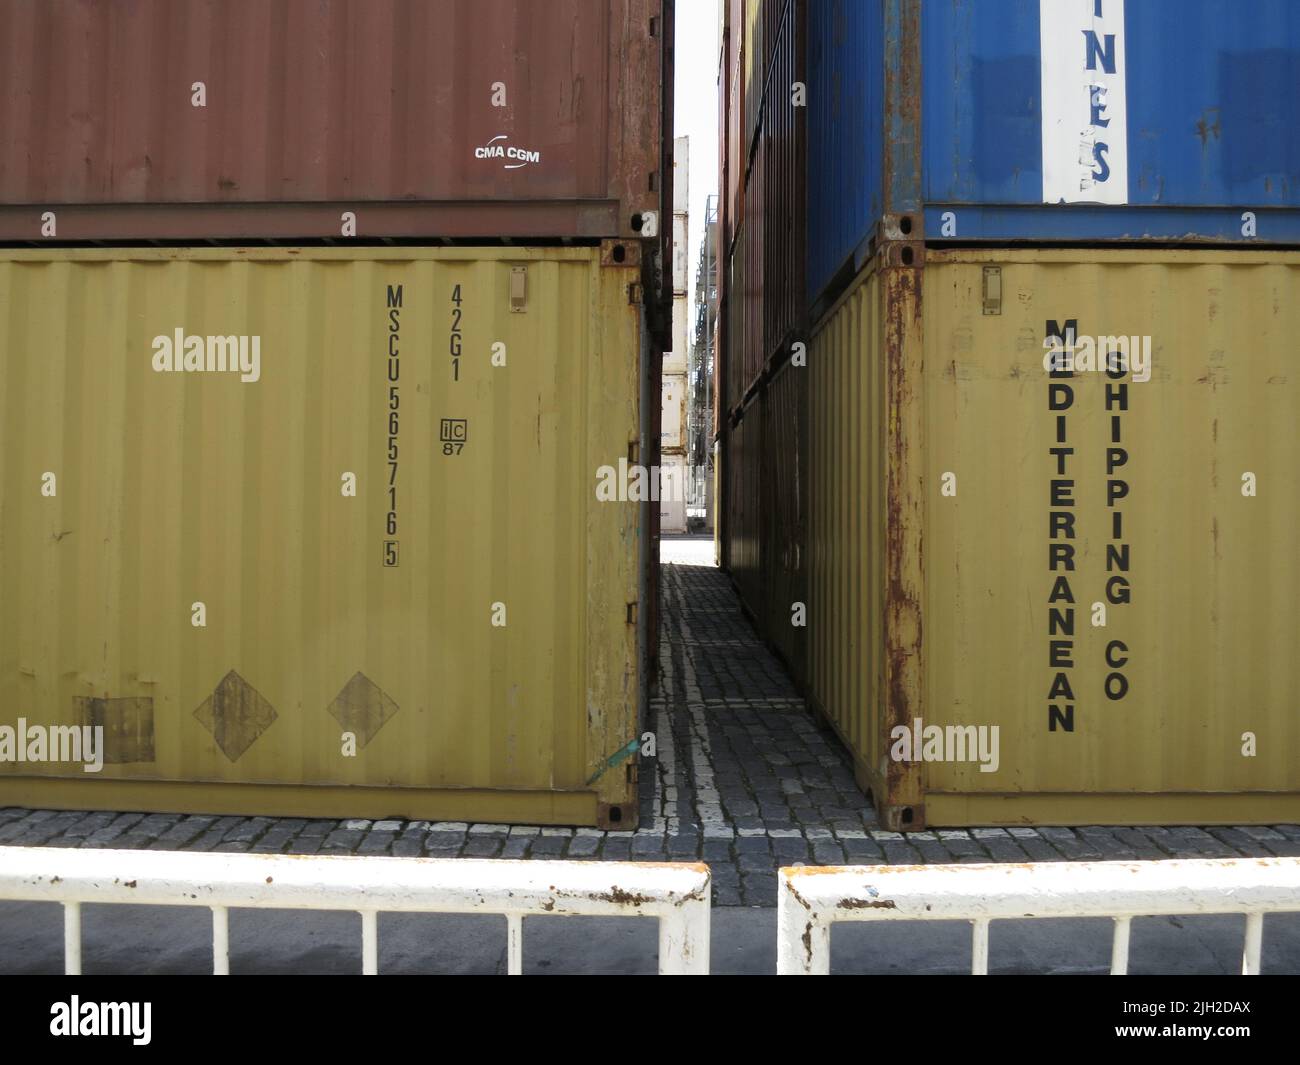 Container haben den Warenverkehr über Wasser und Land revolutioniert. Man findet sie in großen Mengen in allen Häfen der Welt. Stock Photo